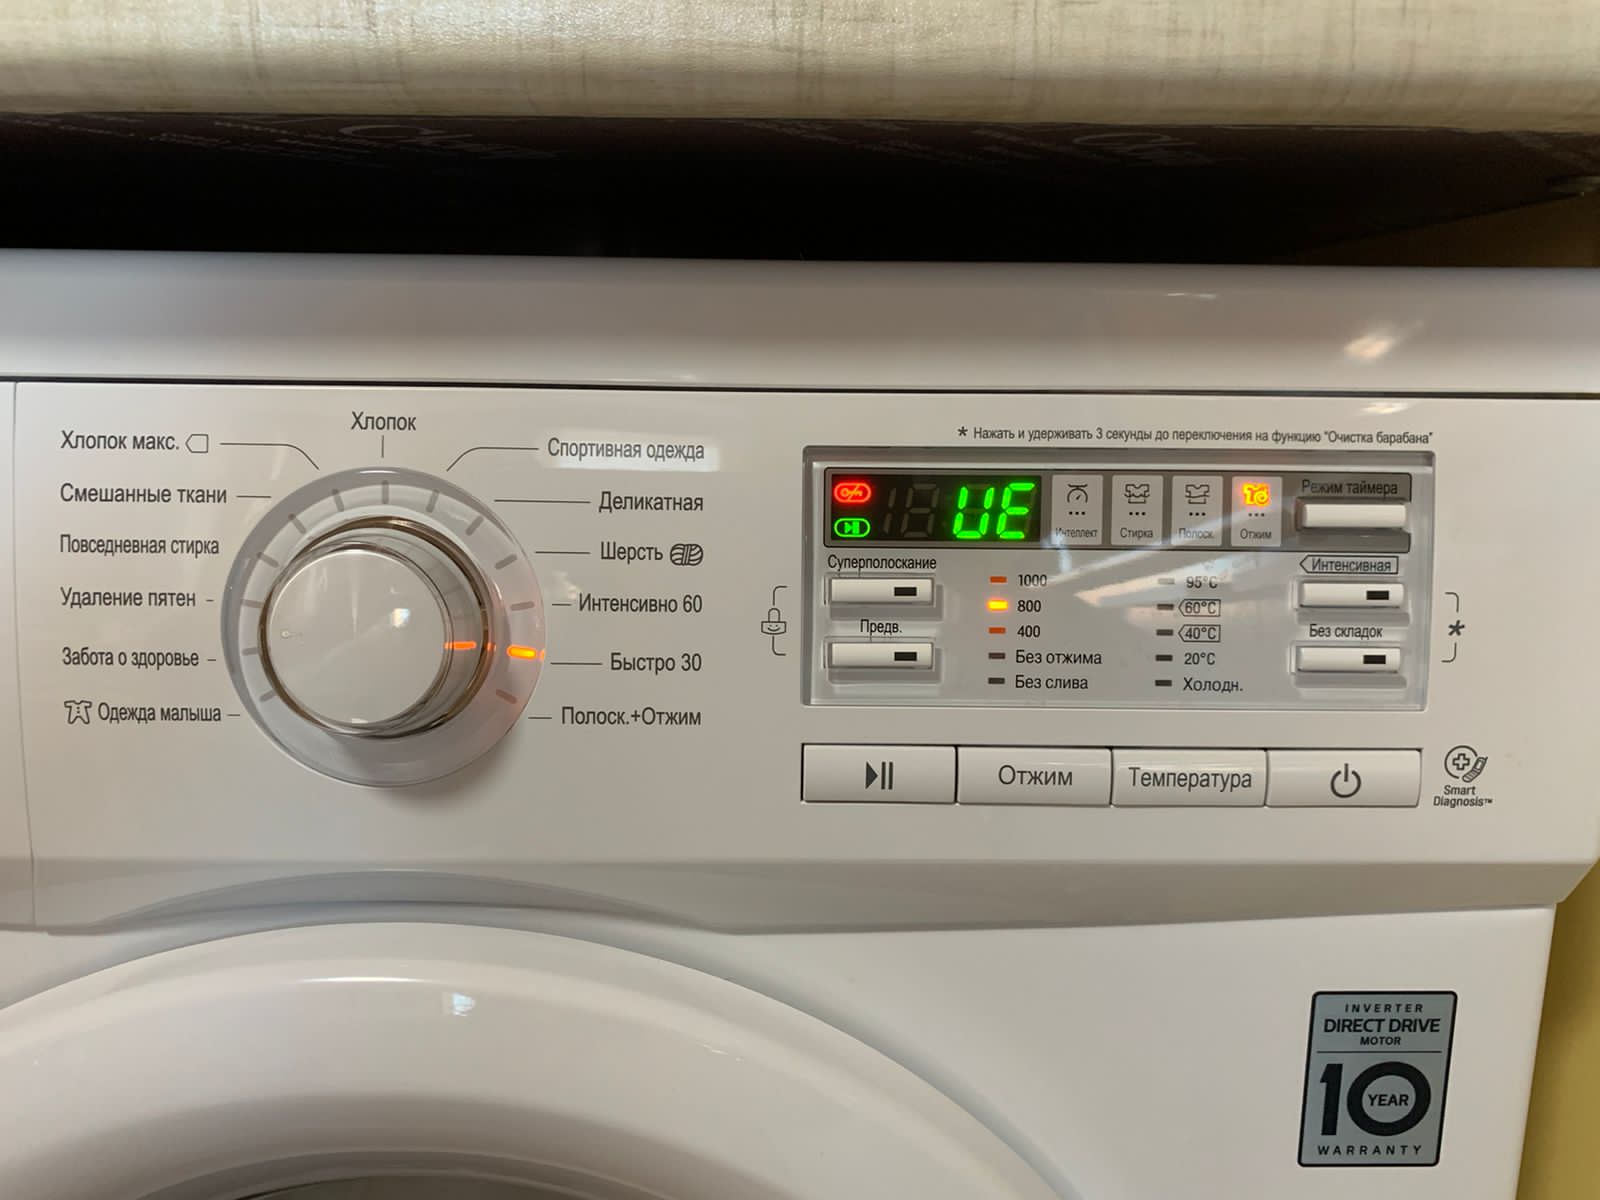 что такое steam в стиральной машине lg это функция фото 78